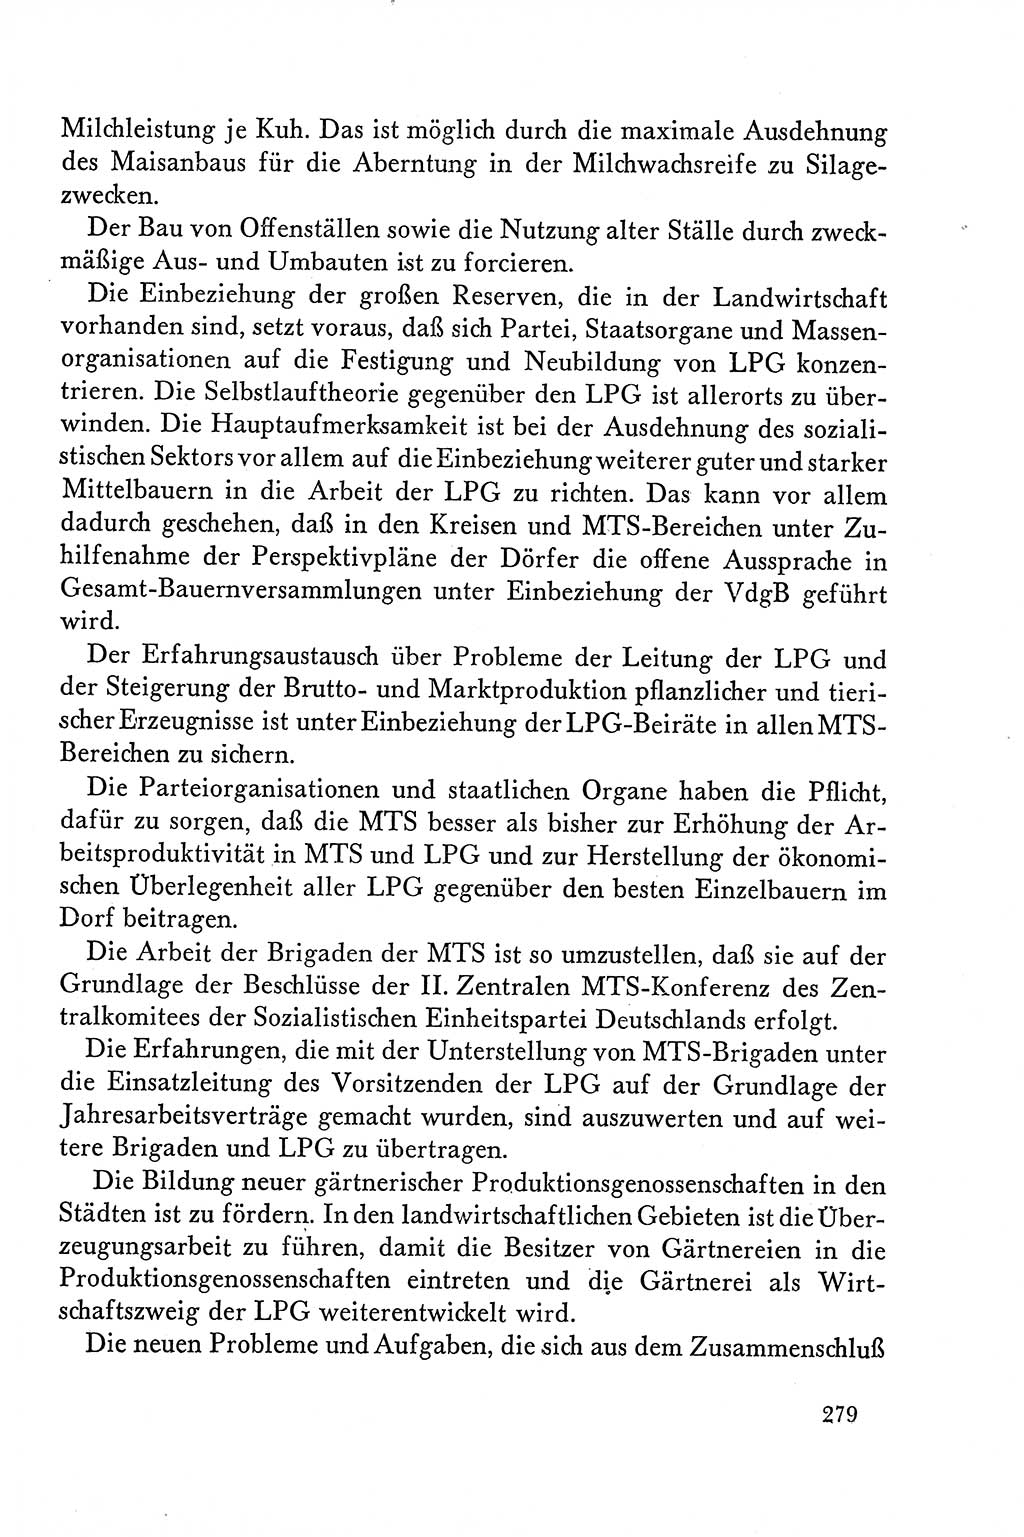 Dokumente der Sozialistischen Einheitspartei Deutschlands (SED) [Deutsche Demokratische Republik (DDR)] 1958-1959, Seite 279 (Dok. SED DDR 1958-1959, S. 279)